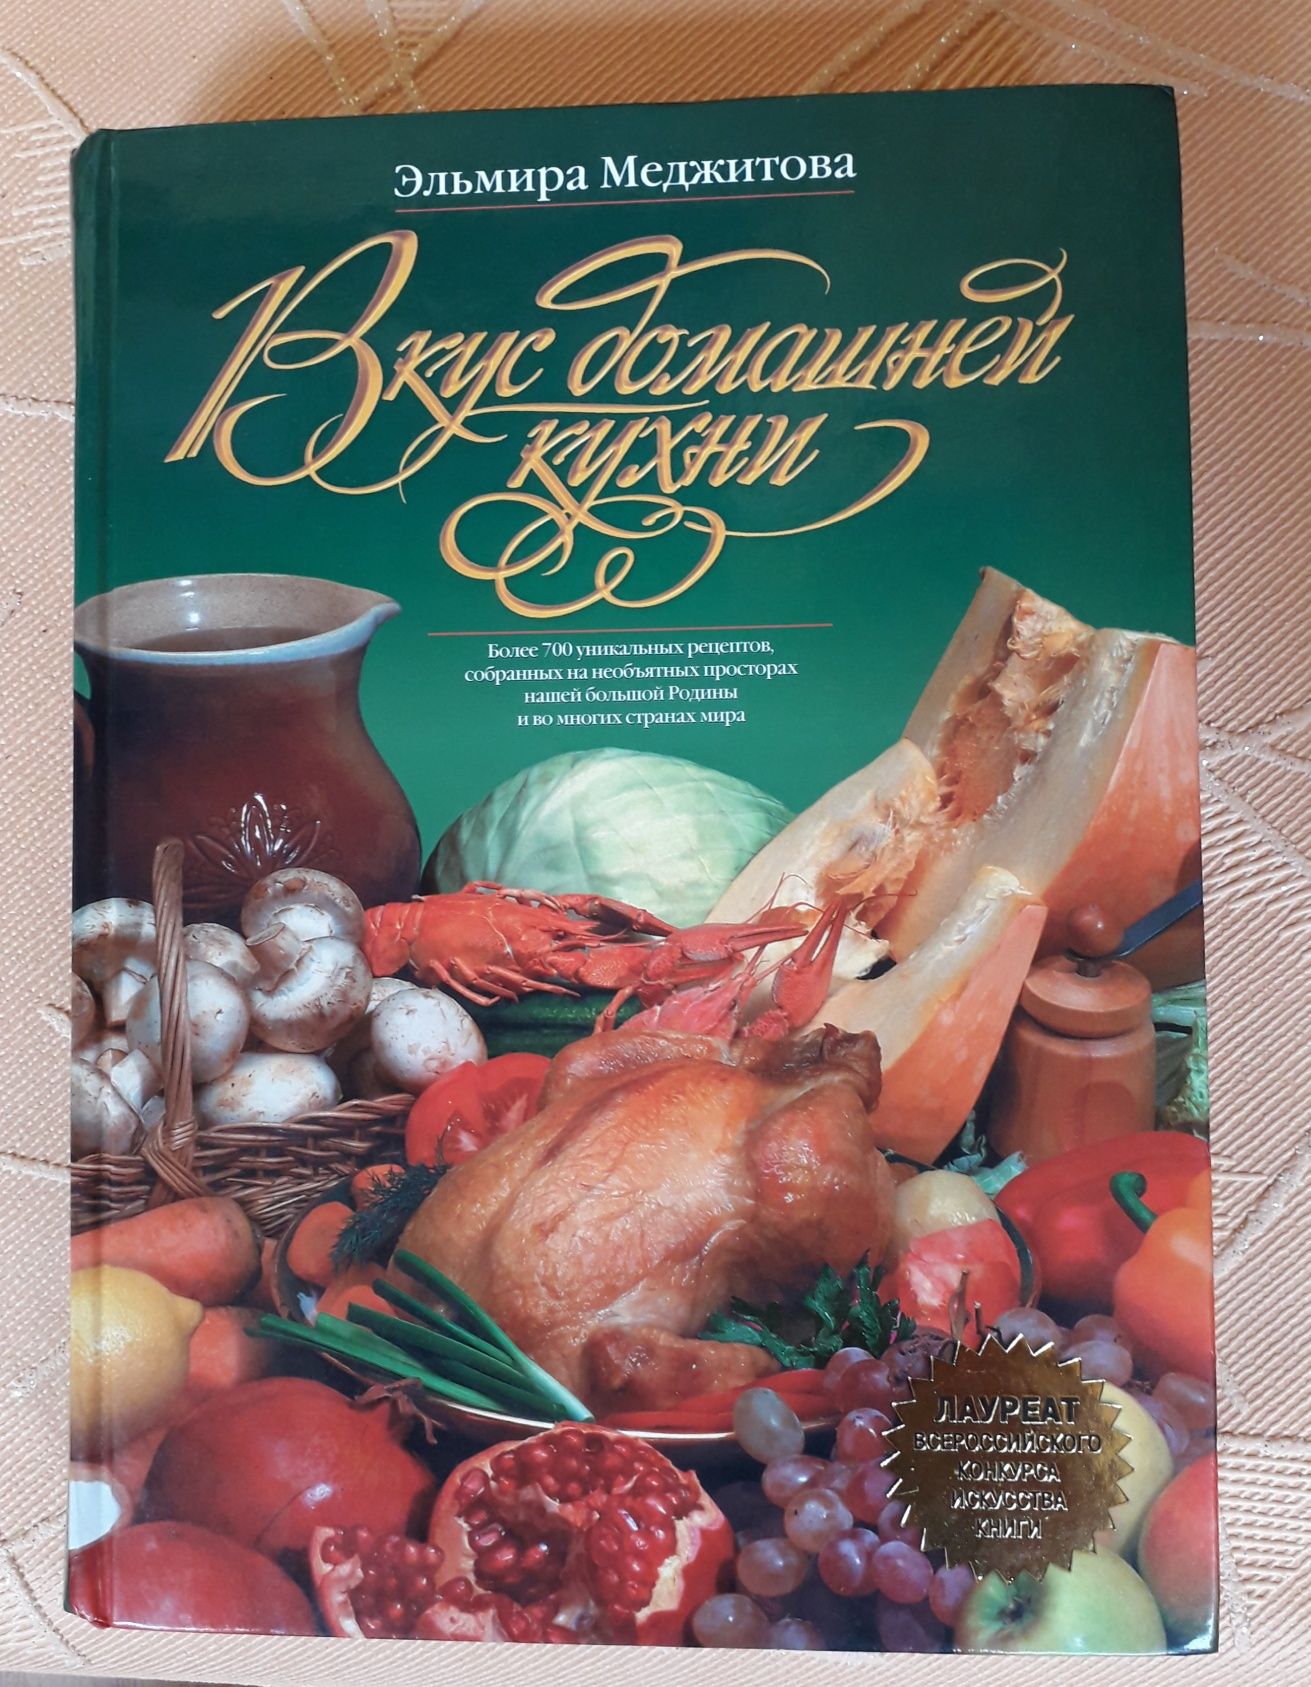 Книга "Вкус домашней кухни" Эльмиры Меджитовой